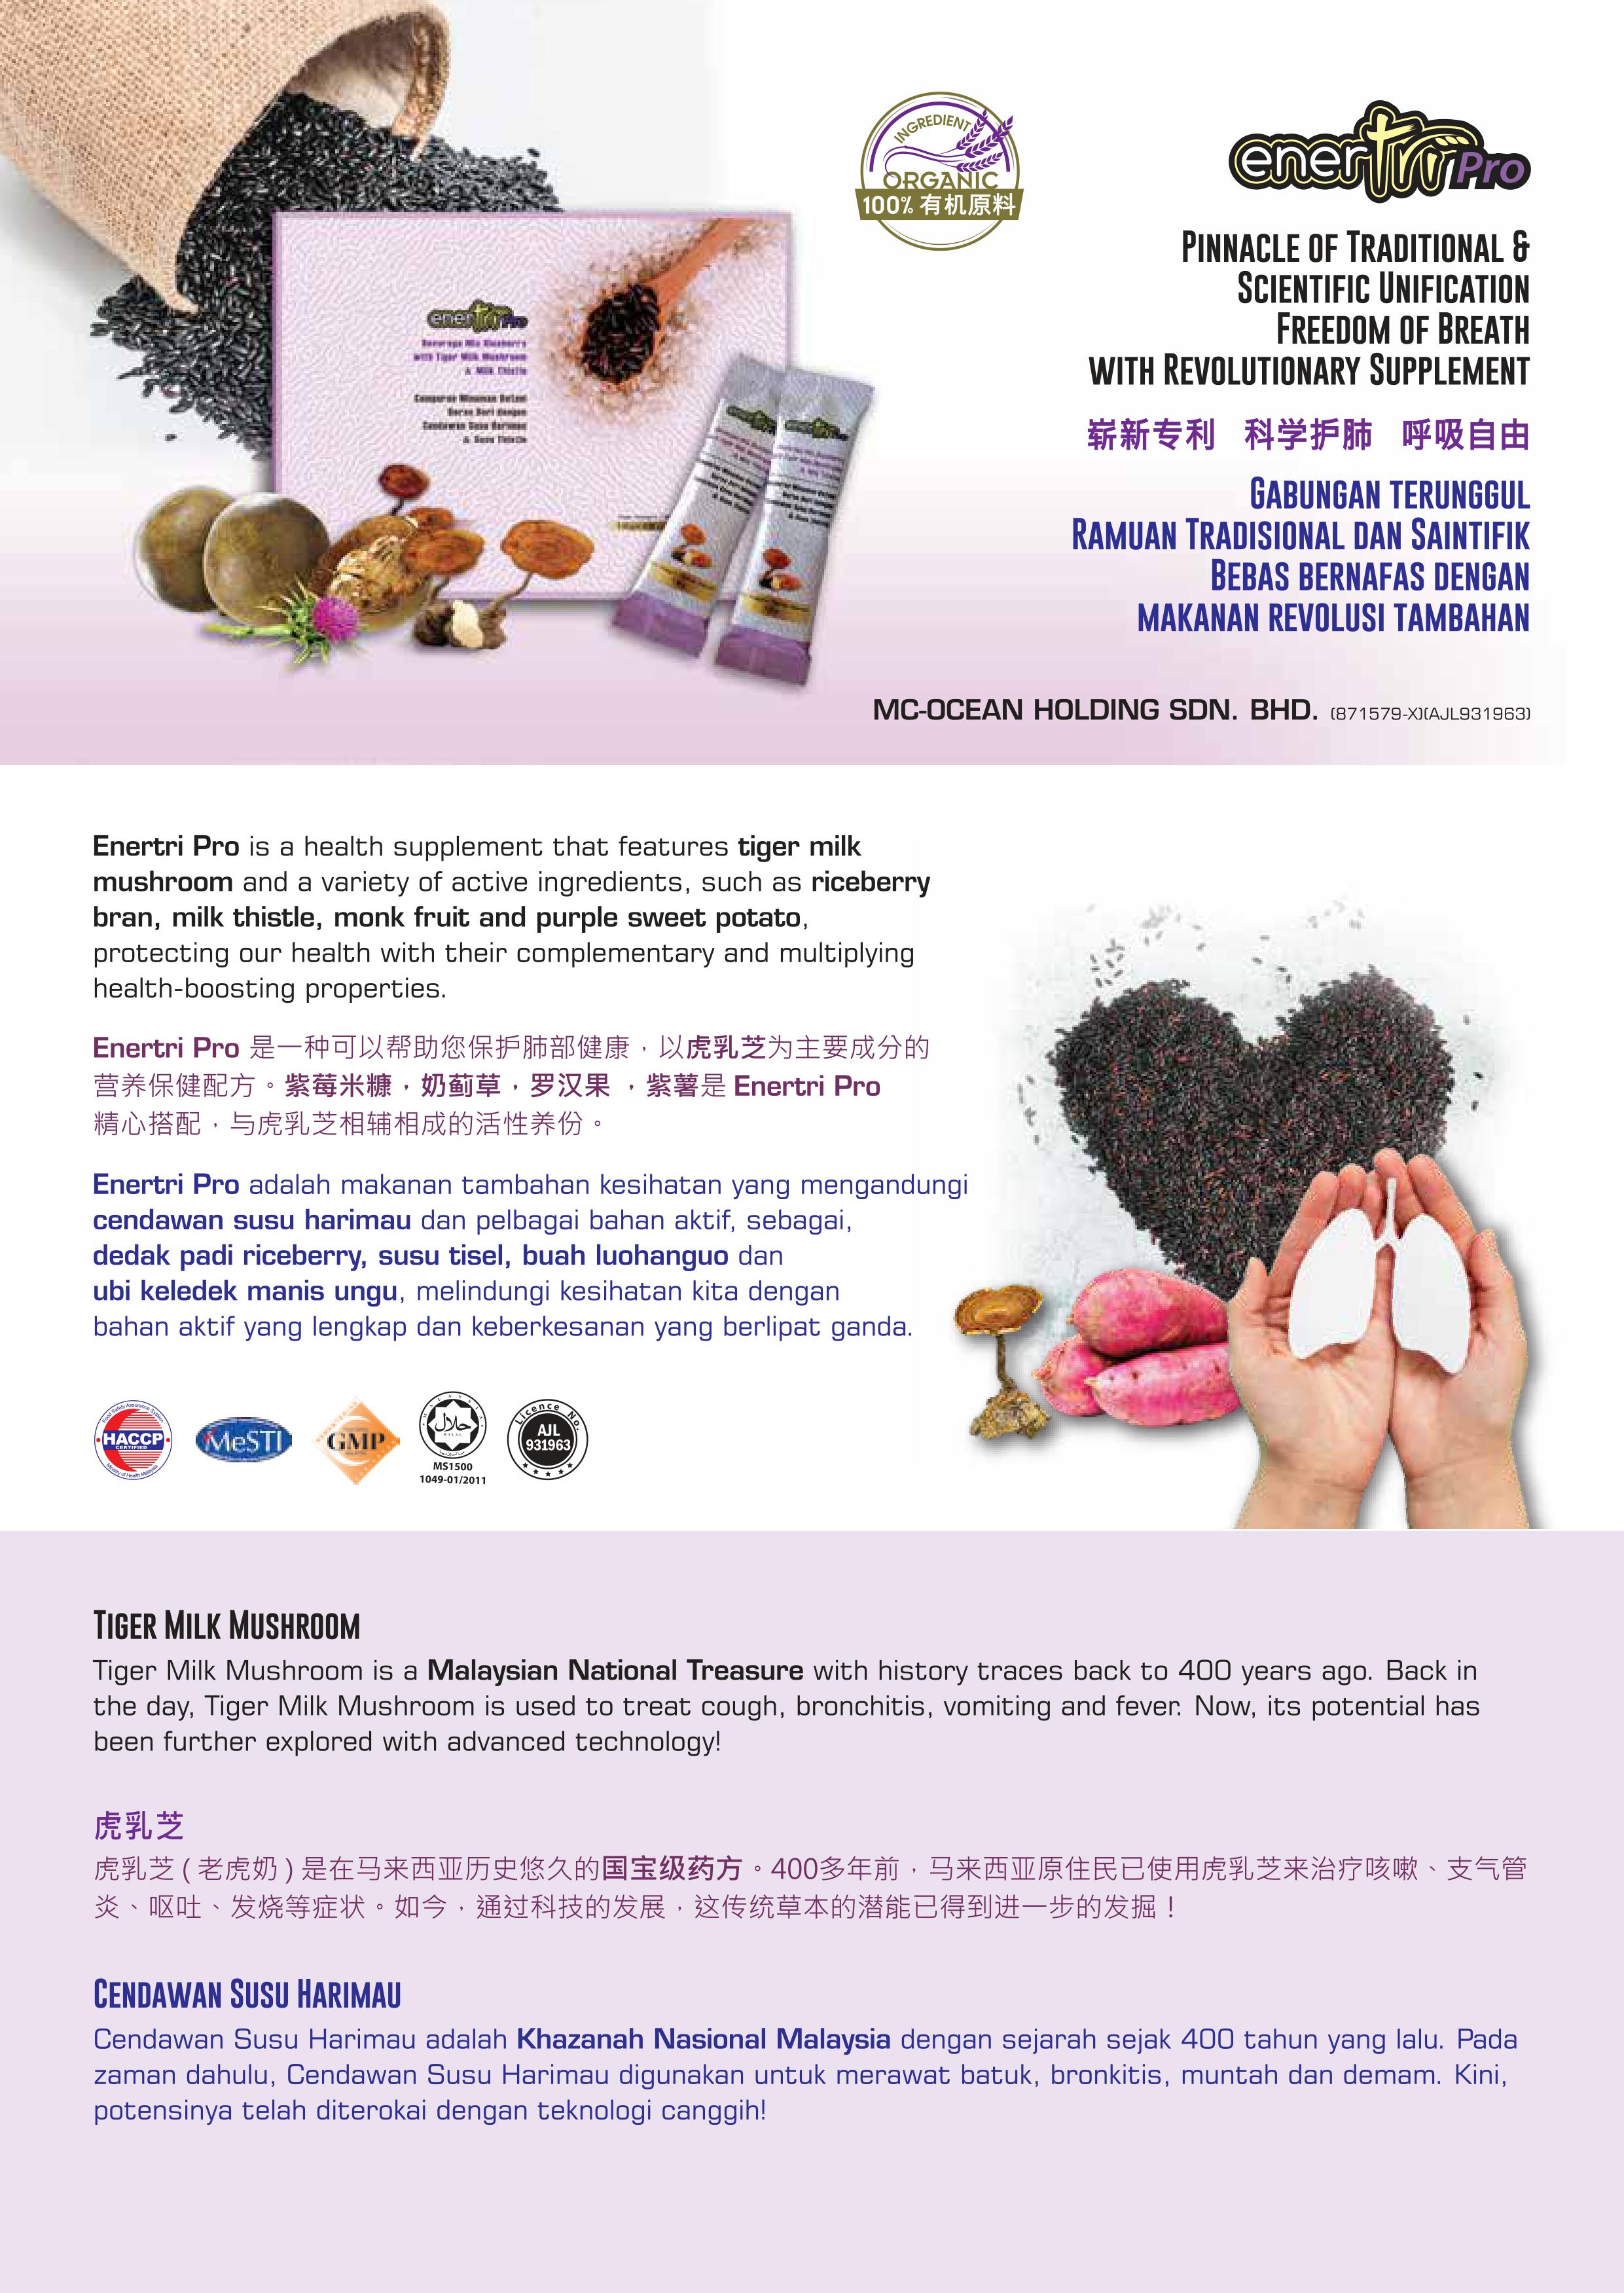 Enertri Pro product leaflet